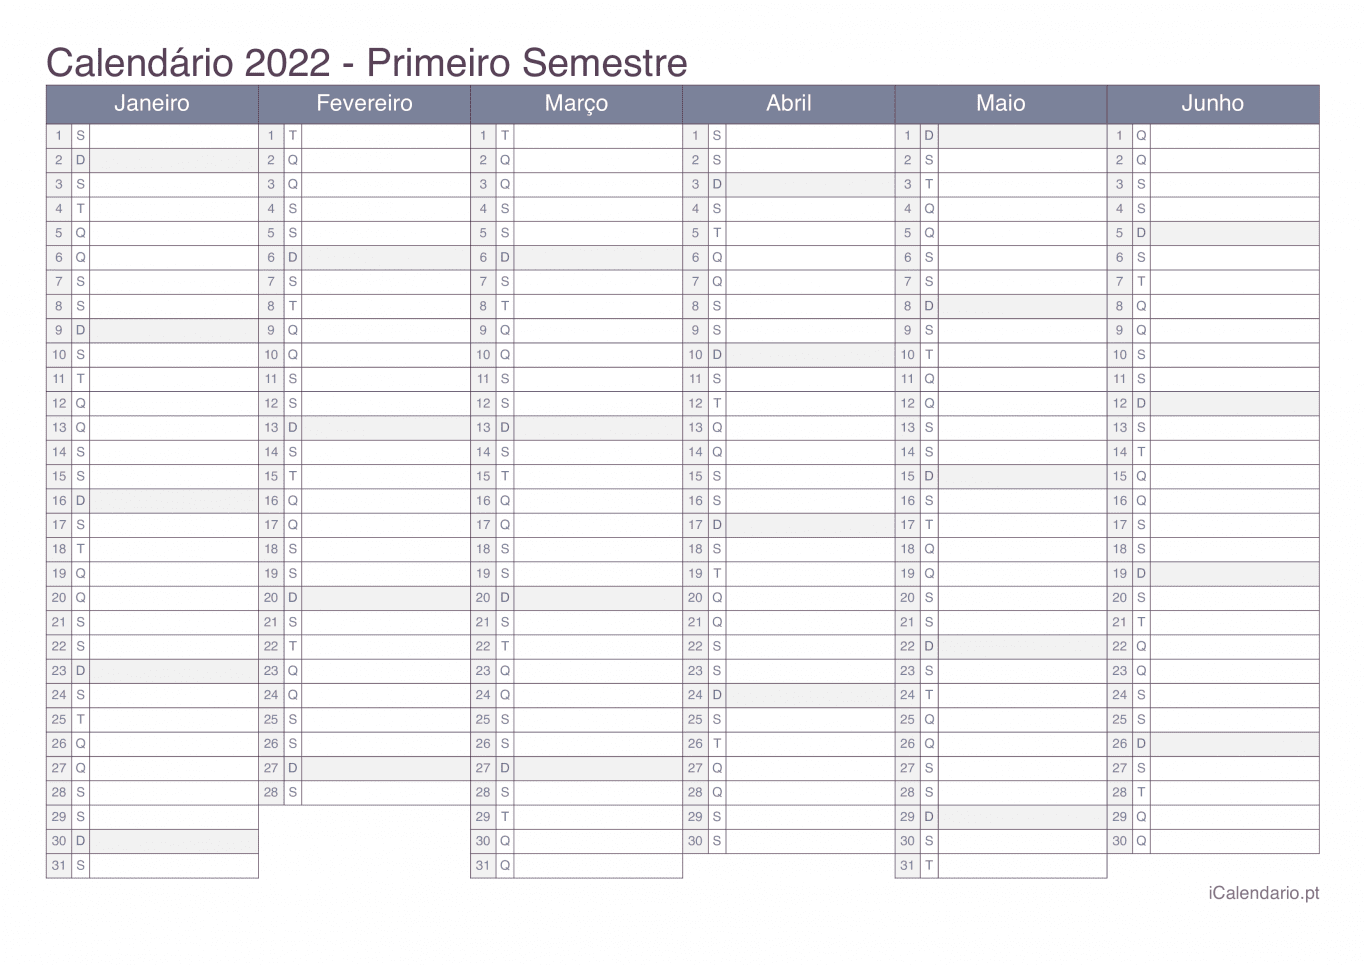 Calendário por semestre 2022 - Office